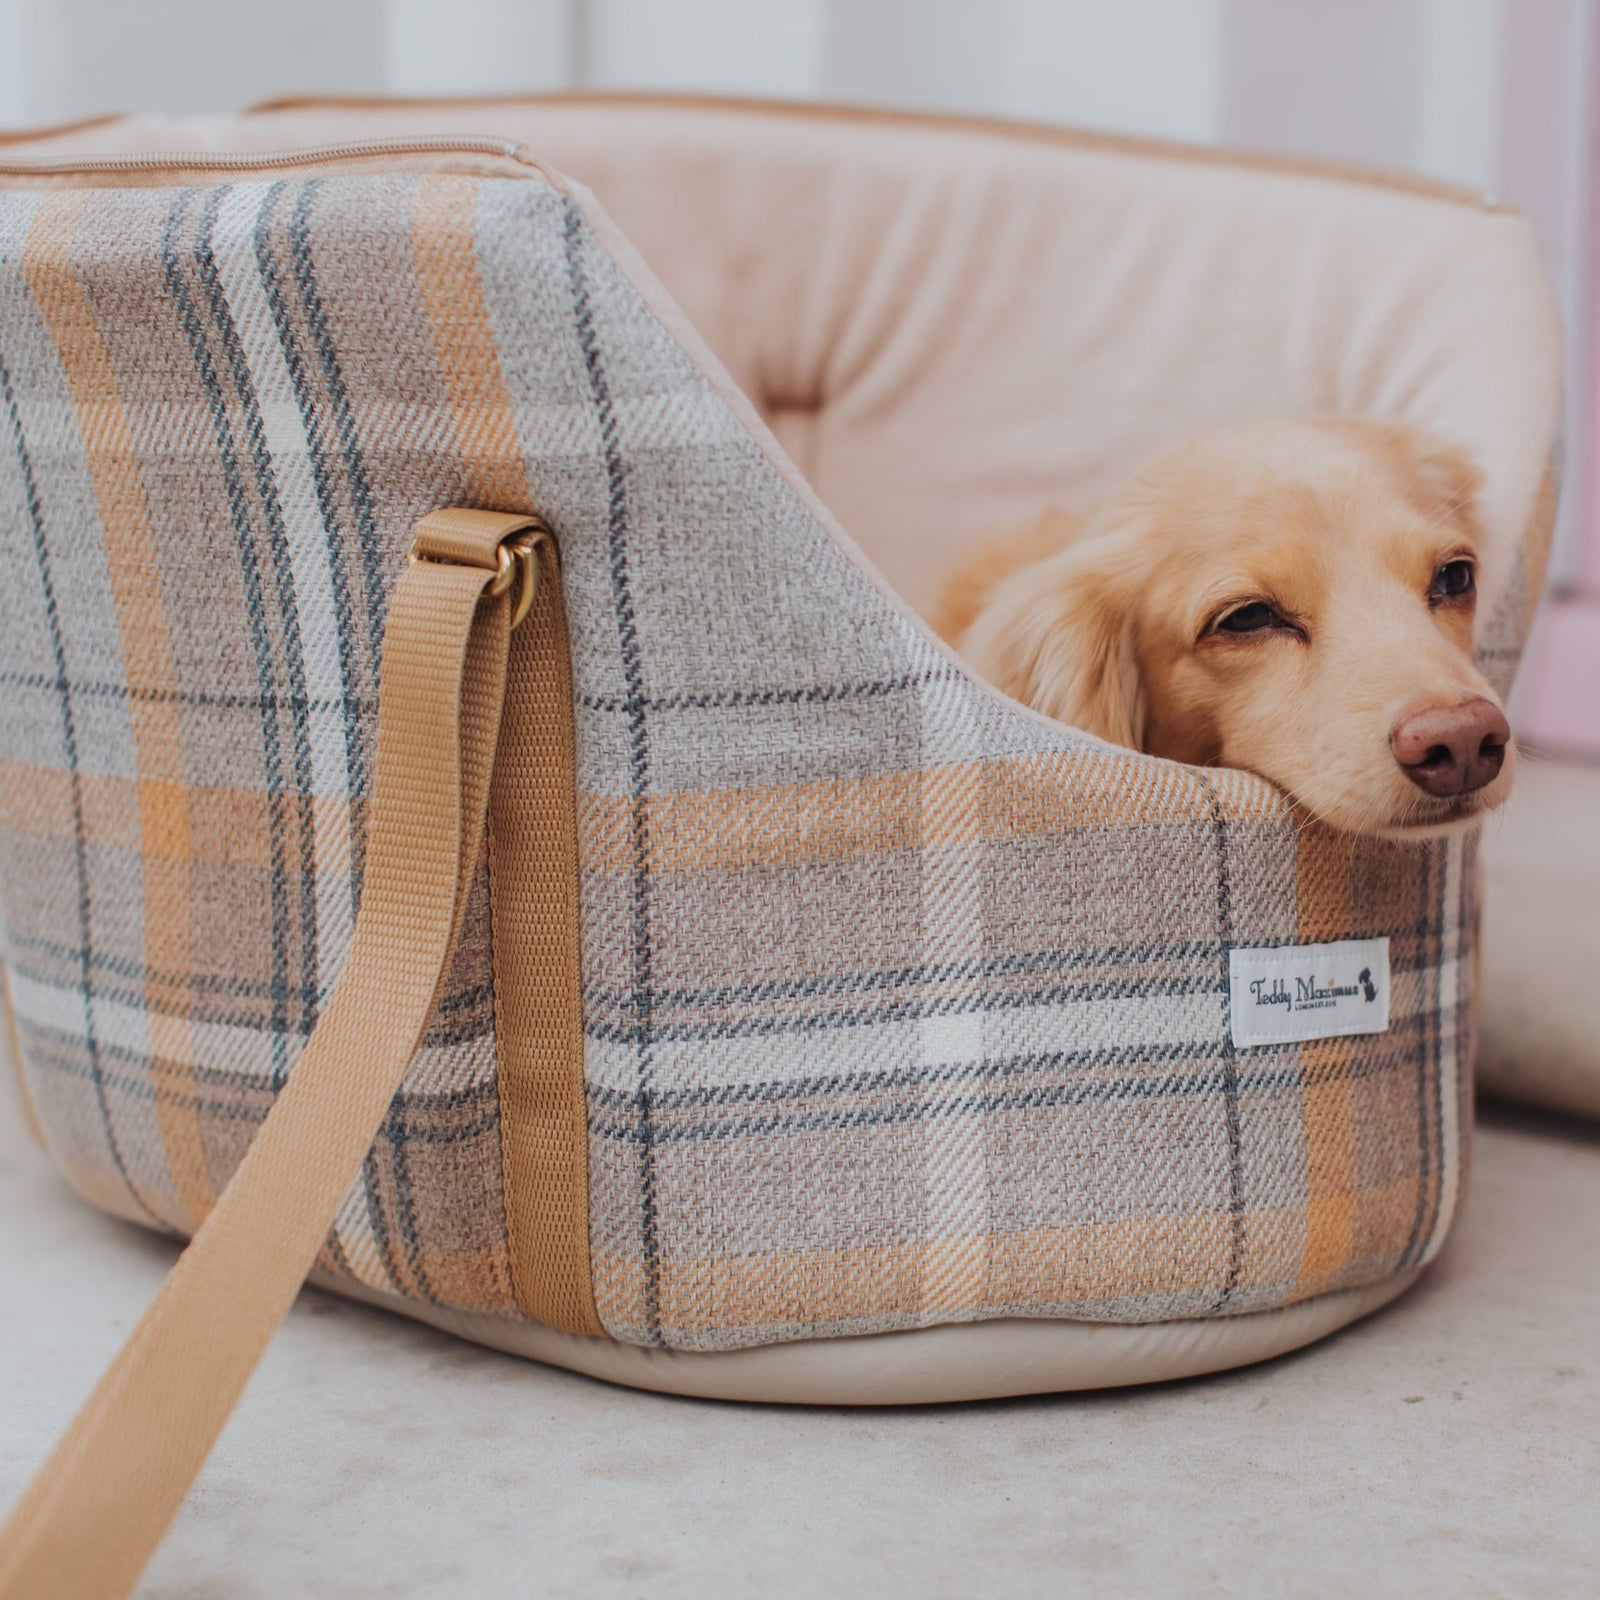 Dog Bag Monogram - Art of Living - Trunks and Travel